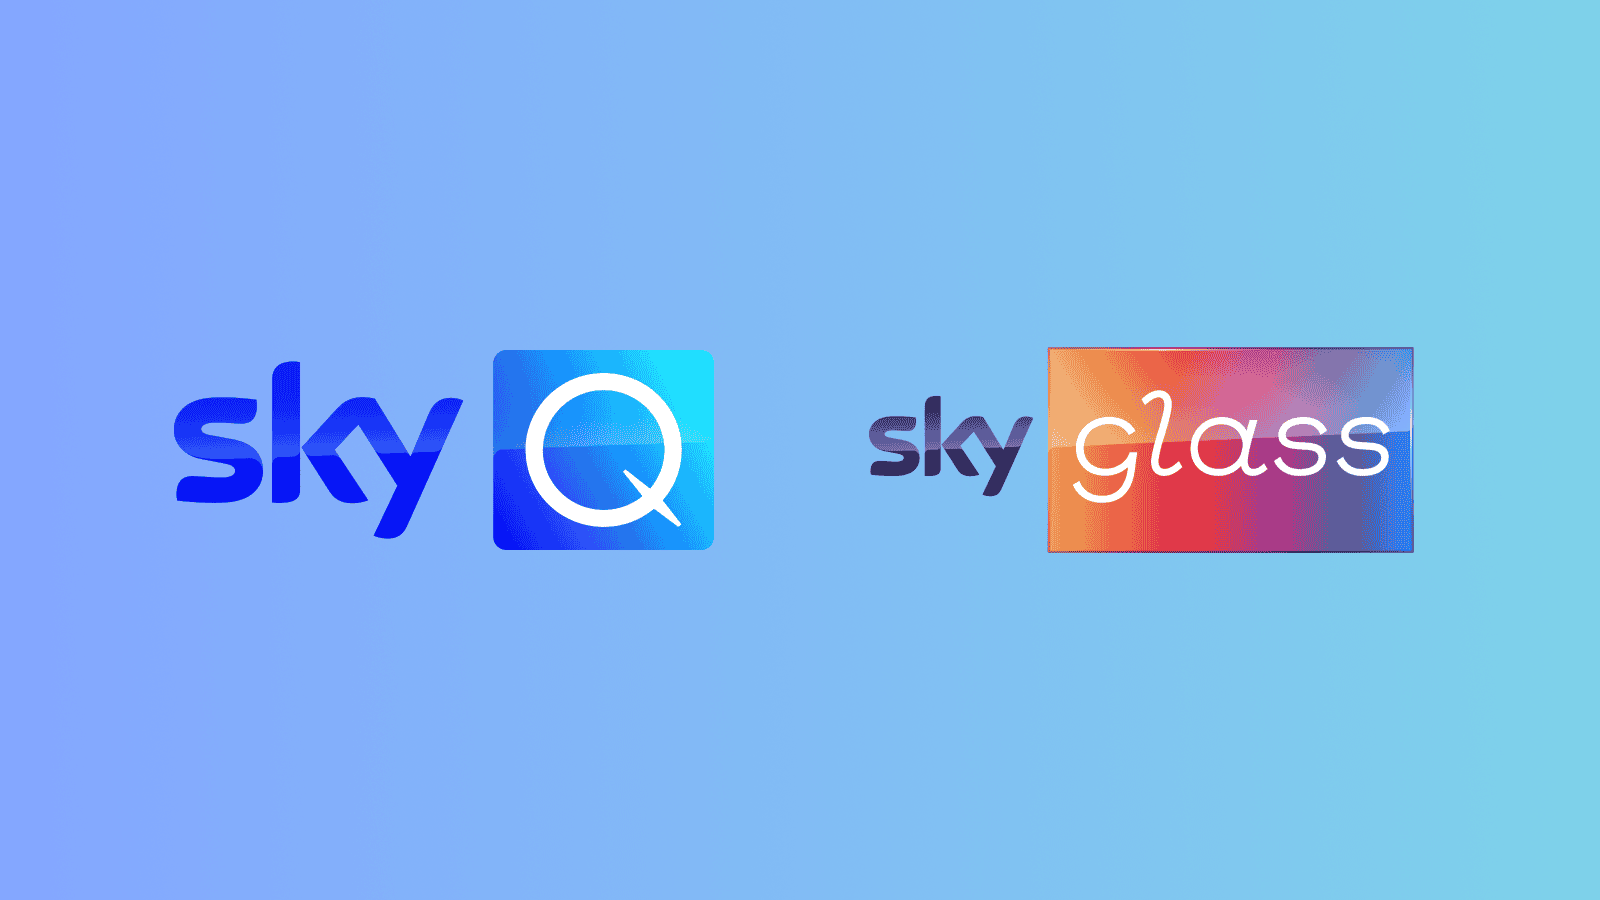 Sky Q and Sky Glass logos